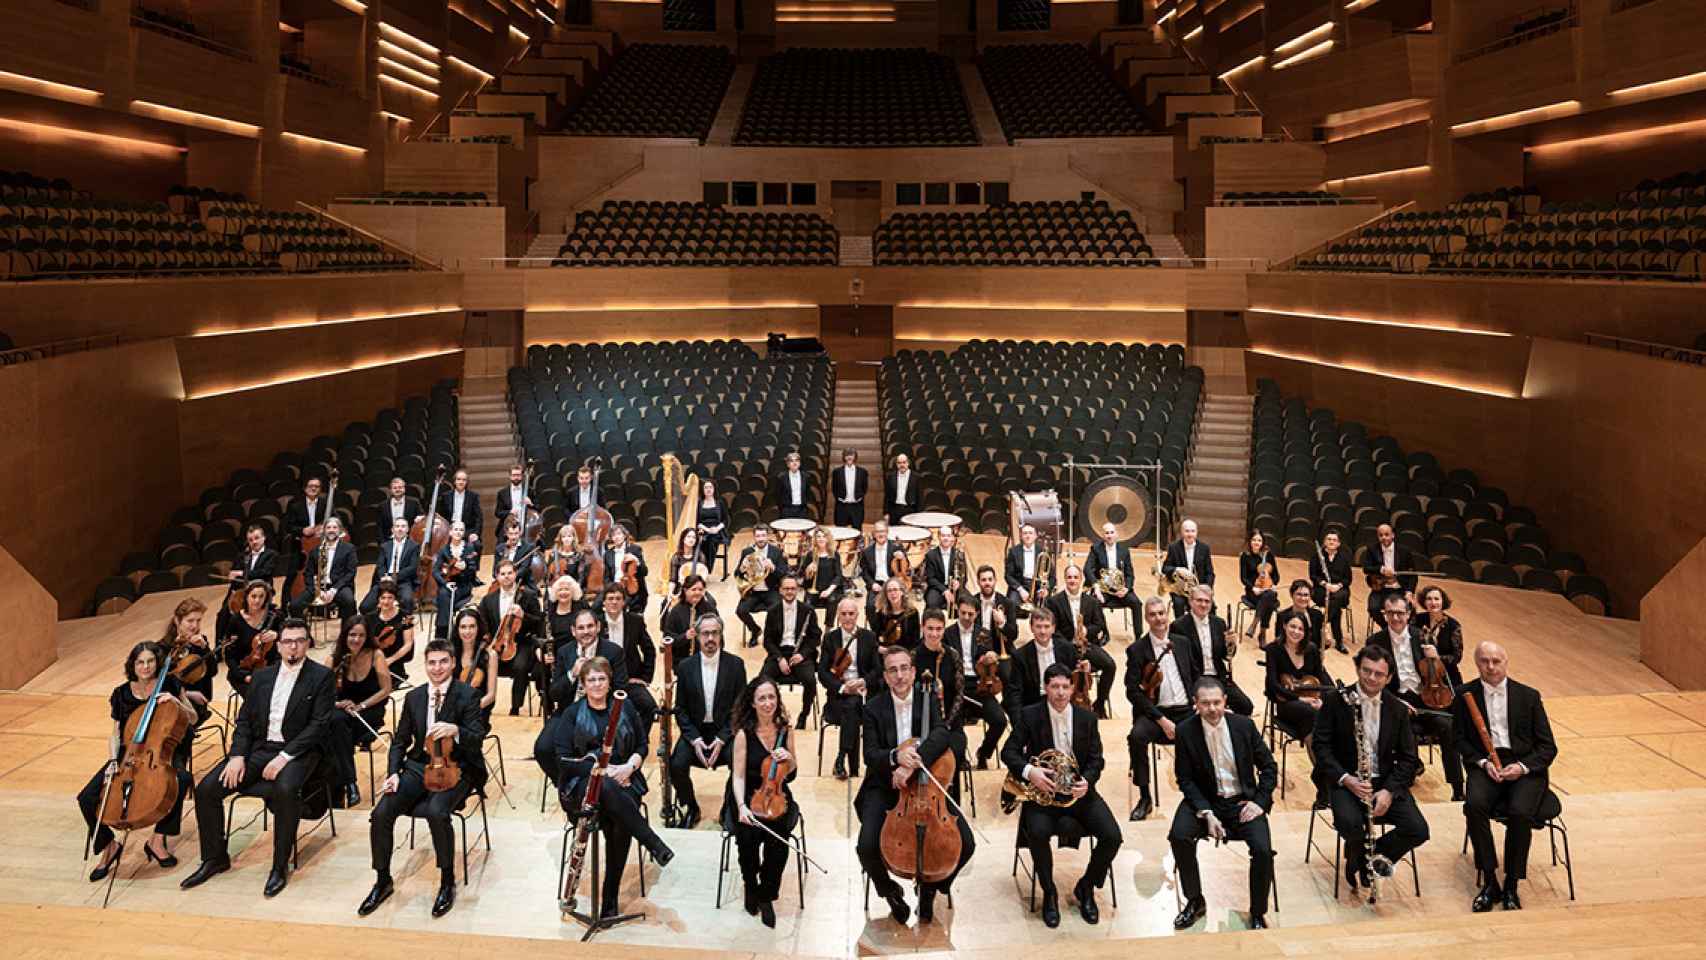 L'Auditori de Barcelona con su orquesta, en una imagen de archivo / L'AUDITORI DE BARCELONA